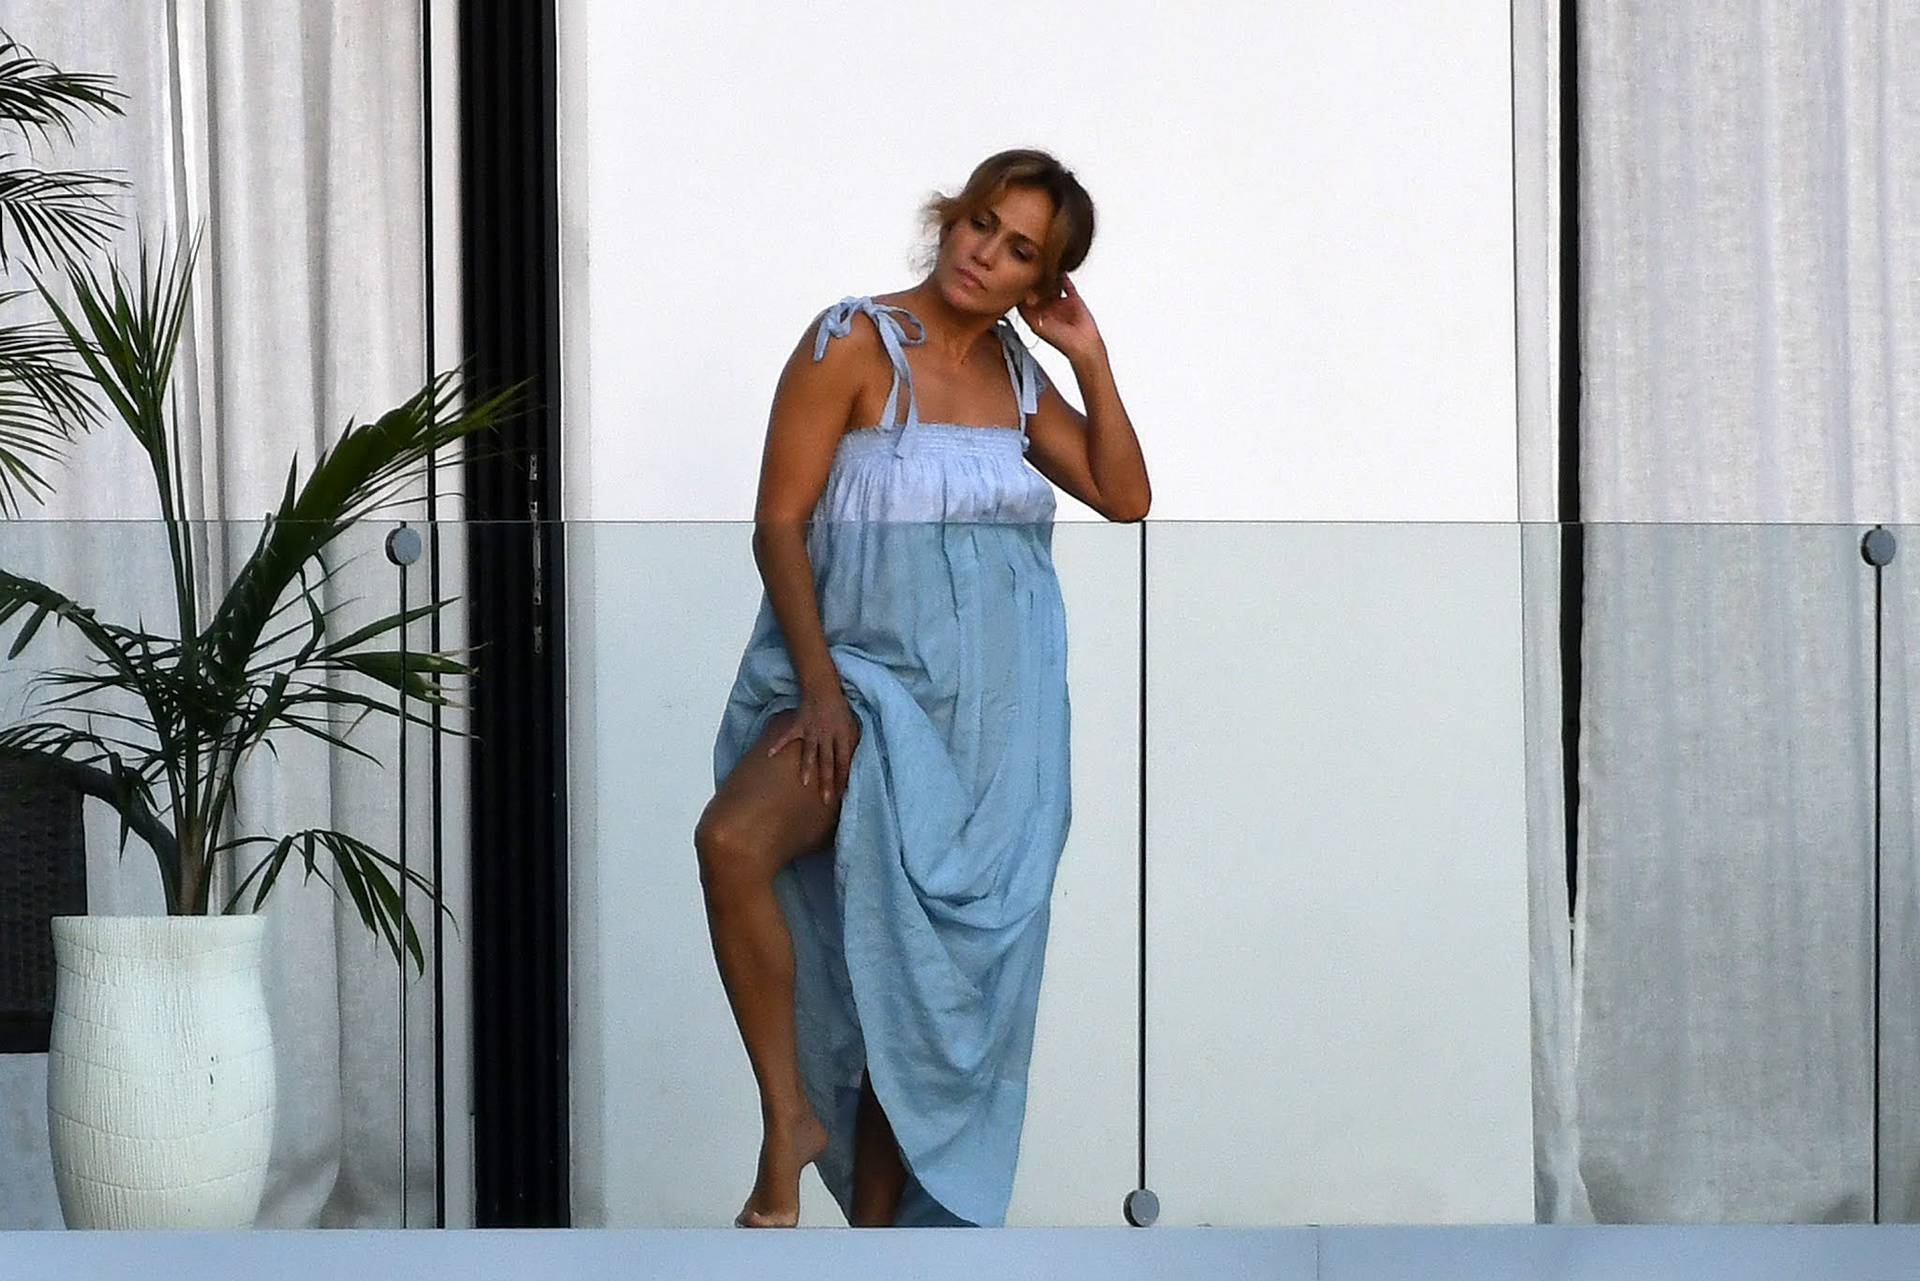 J.Lo i Ben Affleck uhvaćeni kako se ljube u teretani u Miamiju...